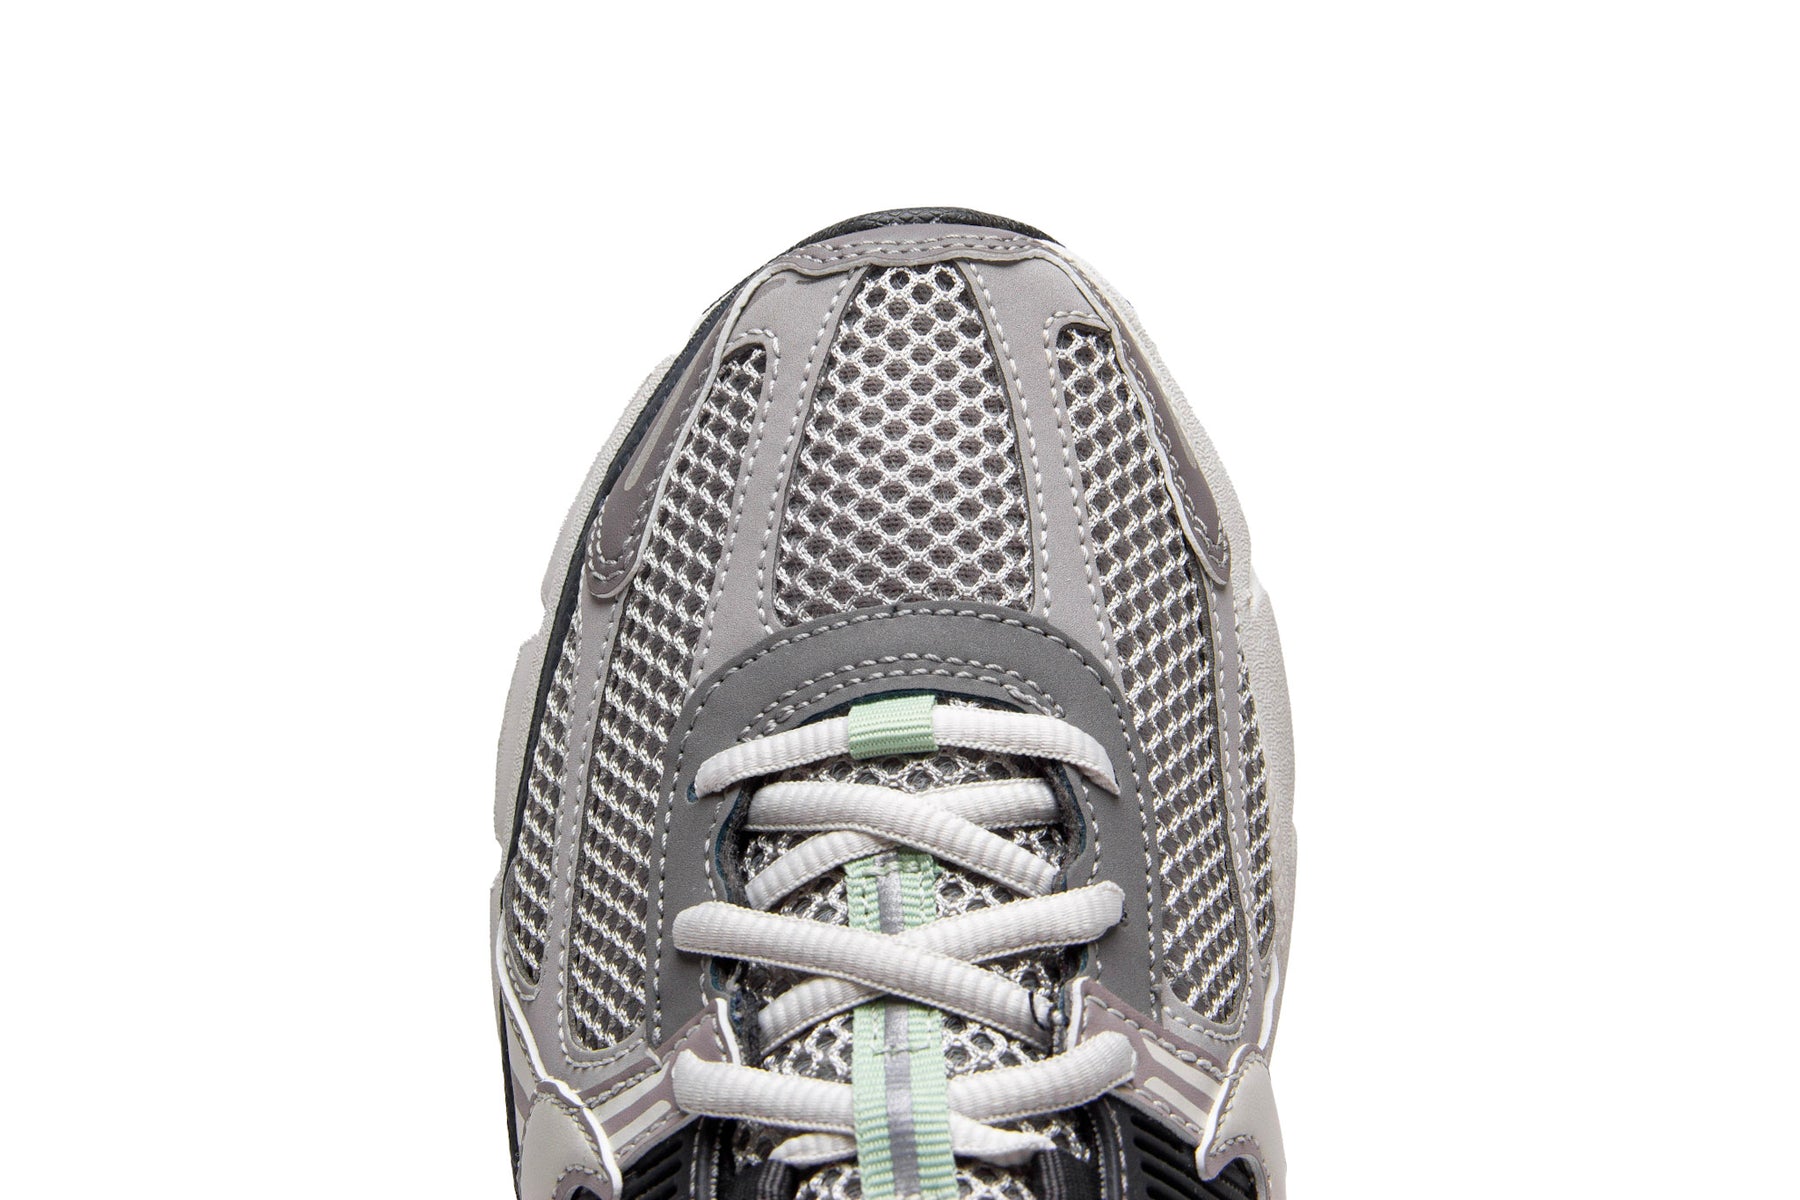 WMNS Nike Zoom Vomero 5 "Cobblestone"